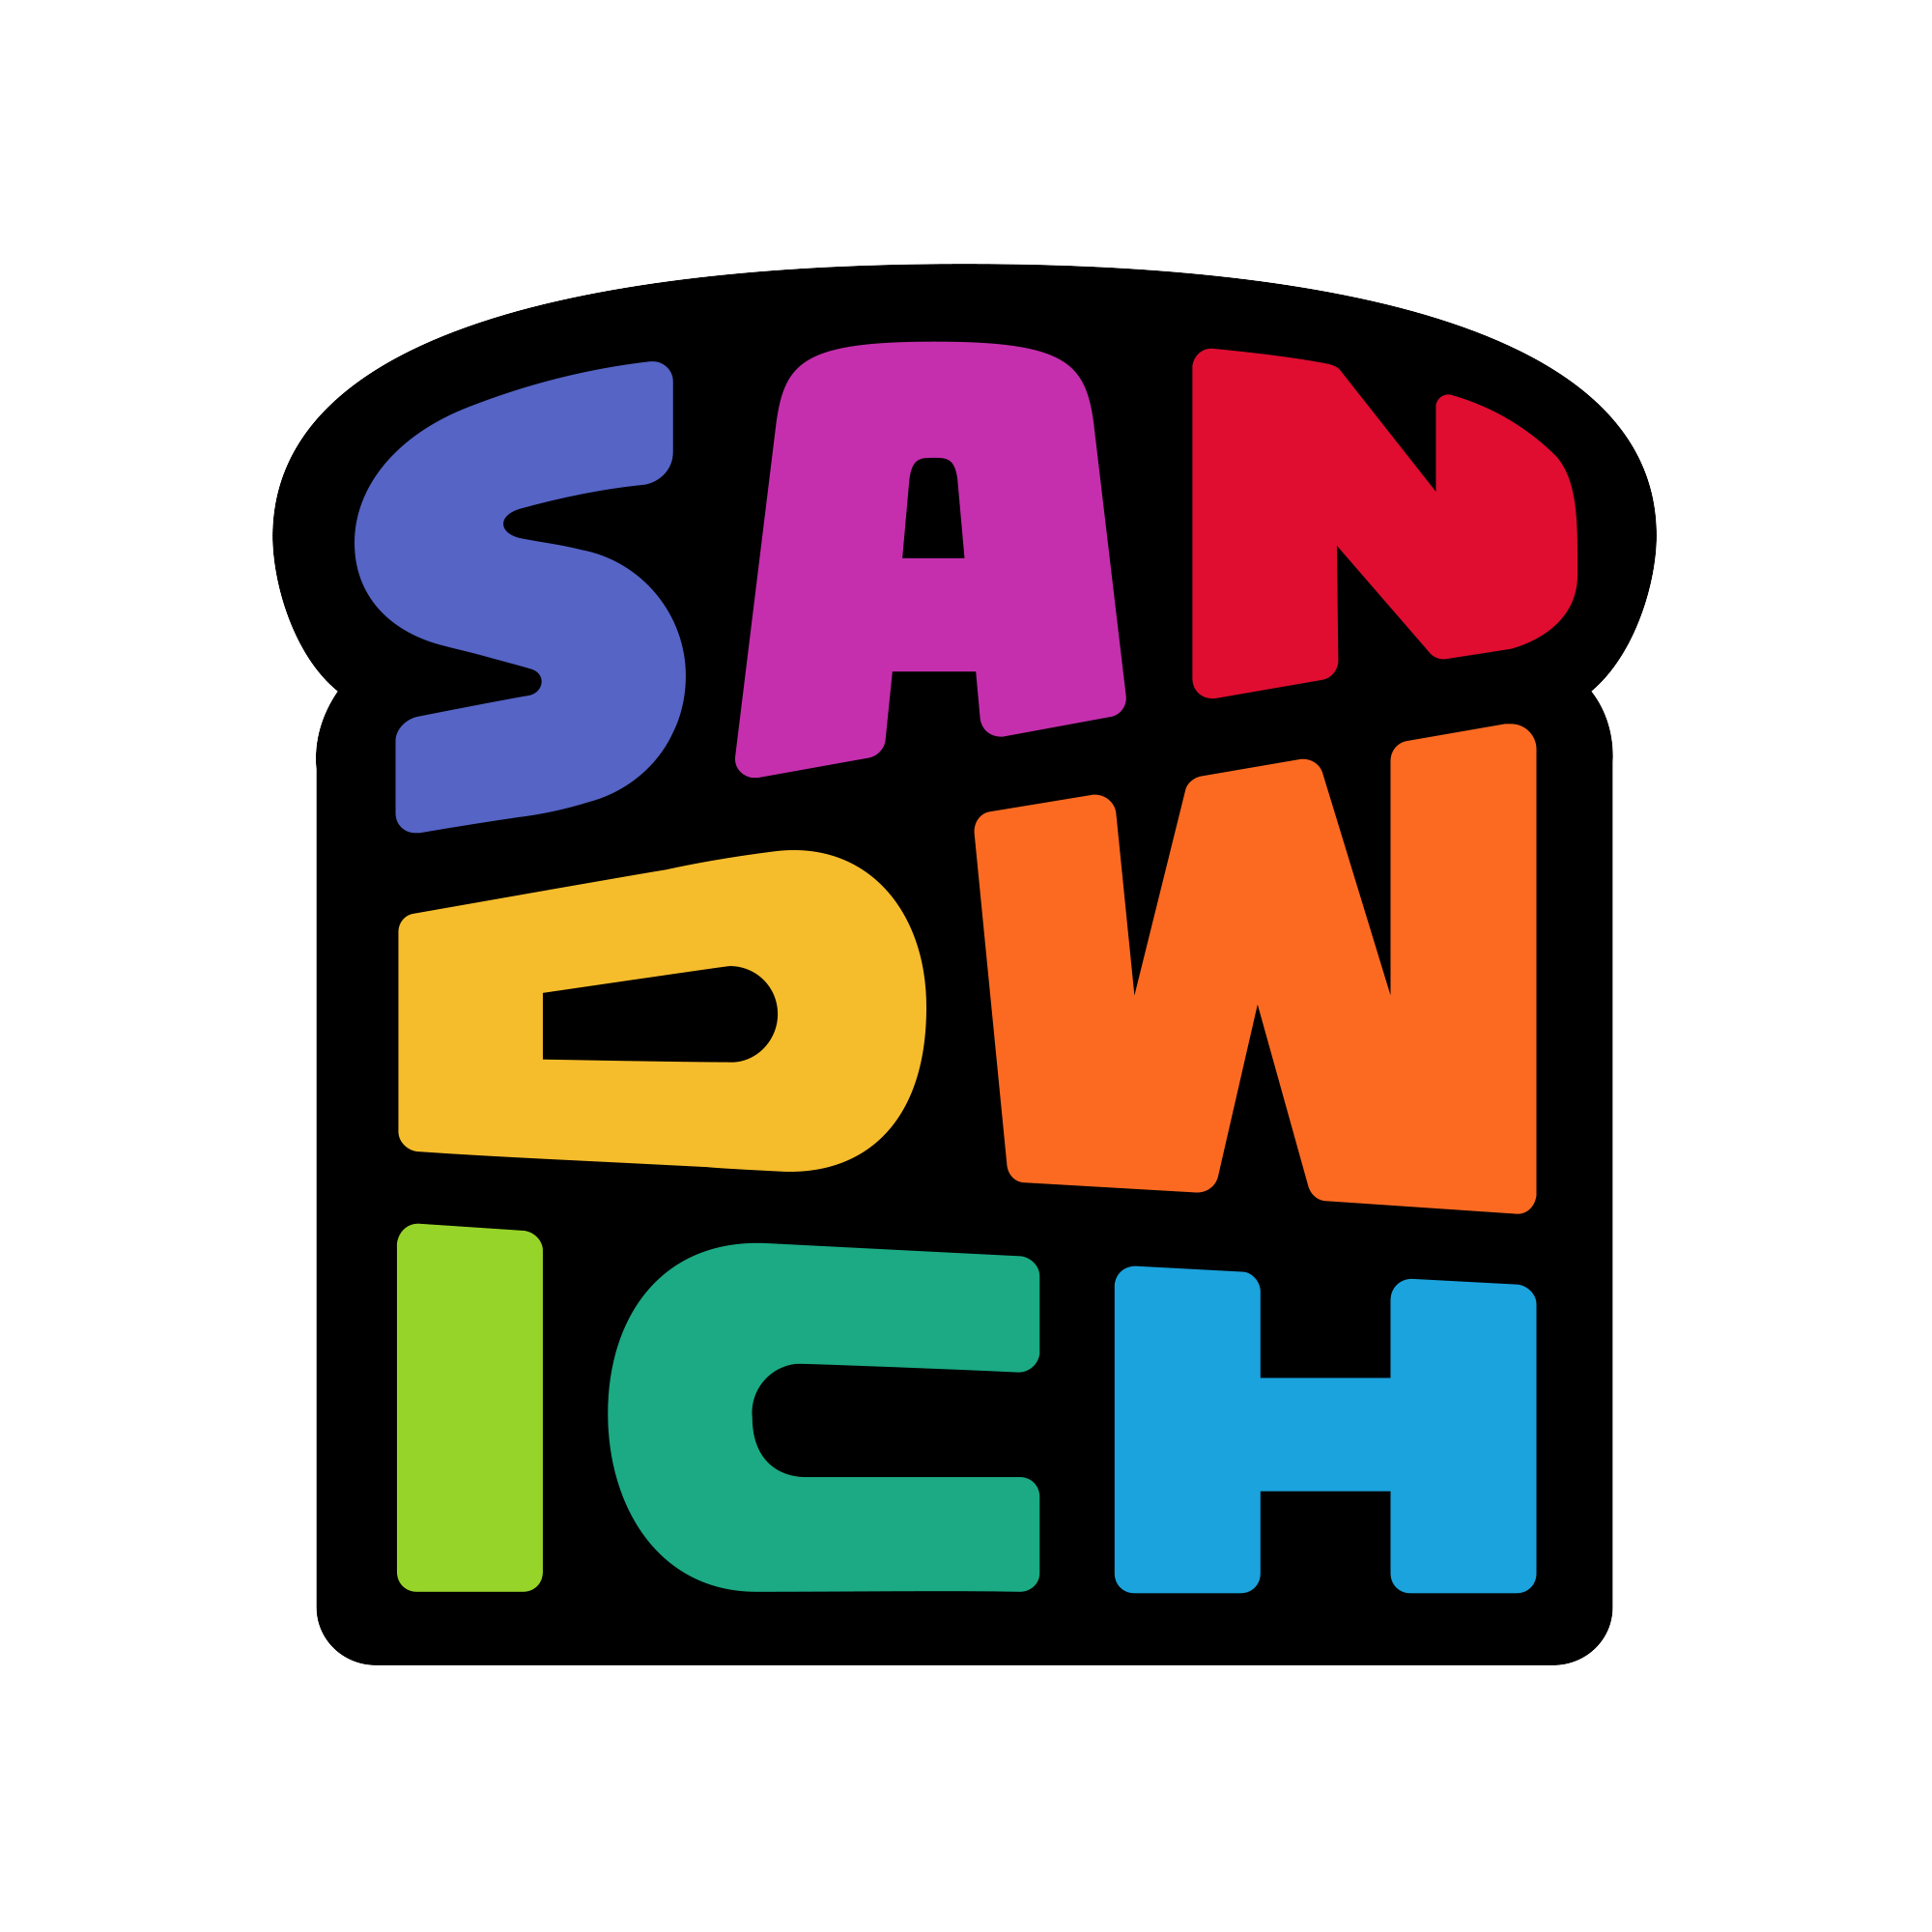 New Logo for Sandwich by Cosma Schema